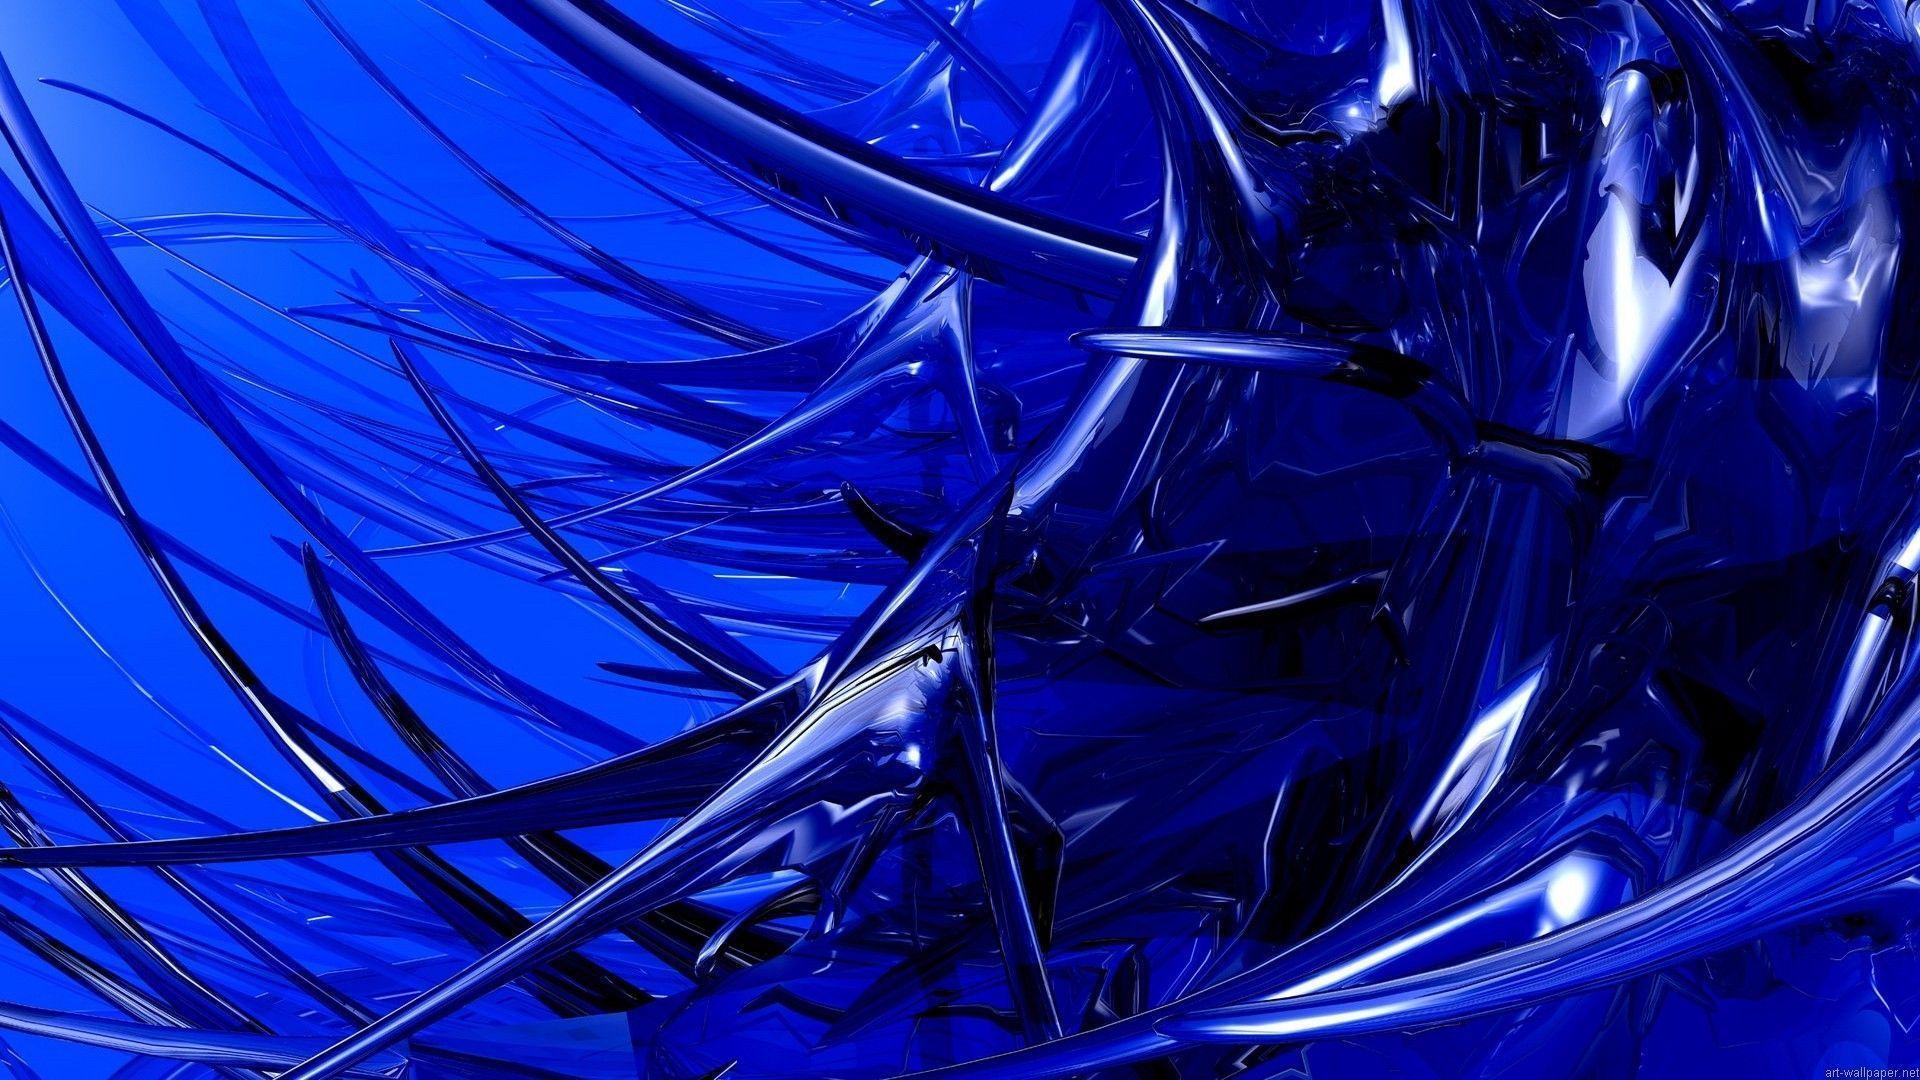 Dark Blue Abstract Wallpapers - Top Những Hình Ảnh Đẹp